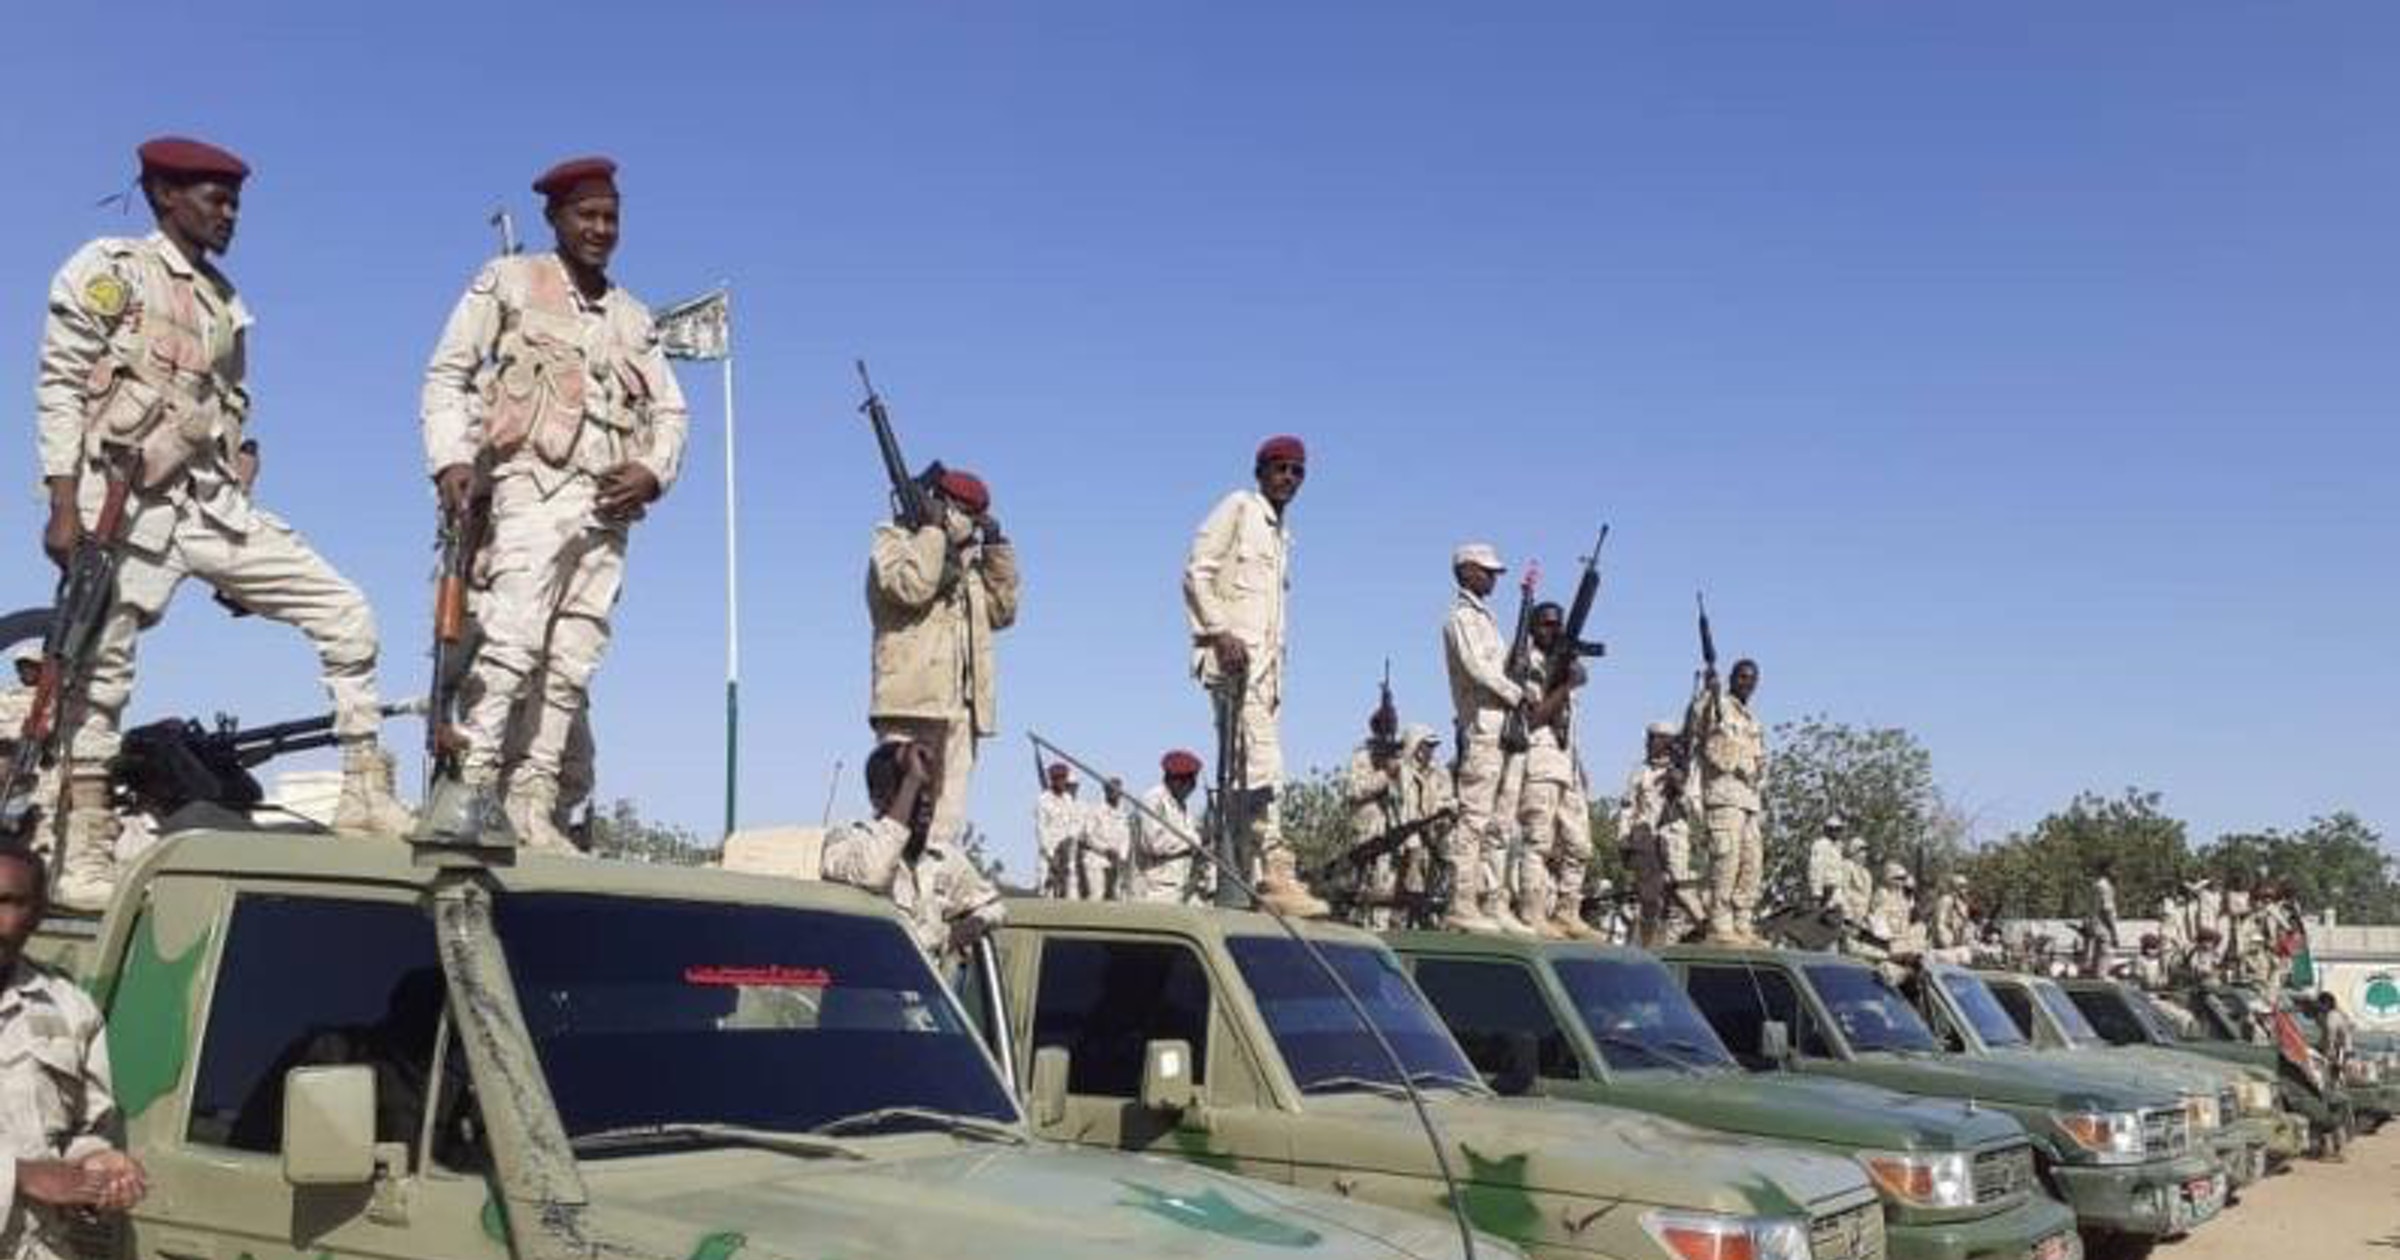 دارفور: وصول قوات إضافية للدعم السريع وإنهاء الصراعات